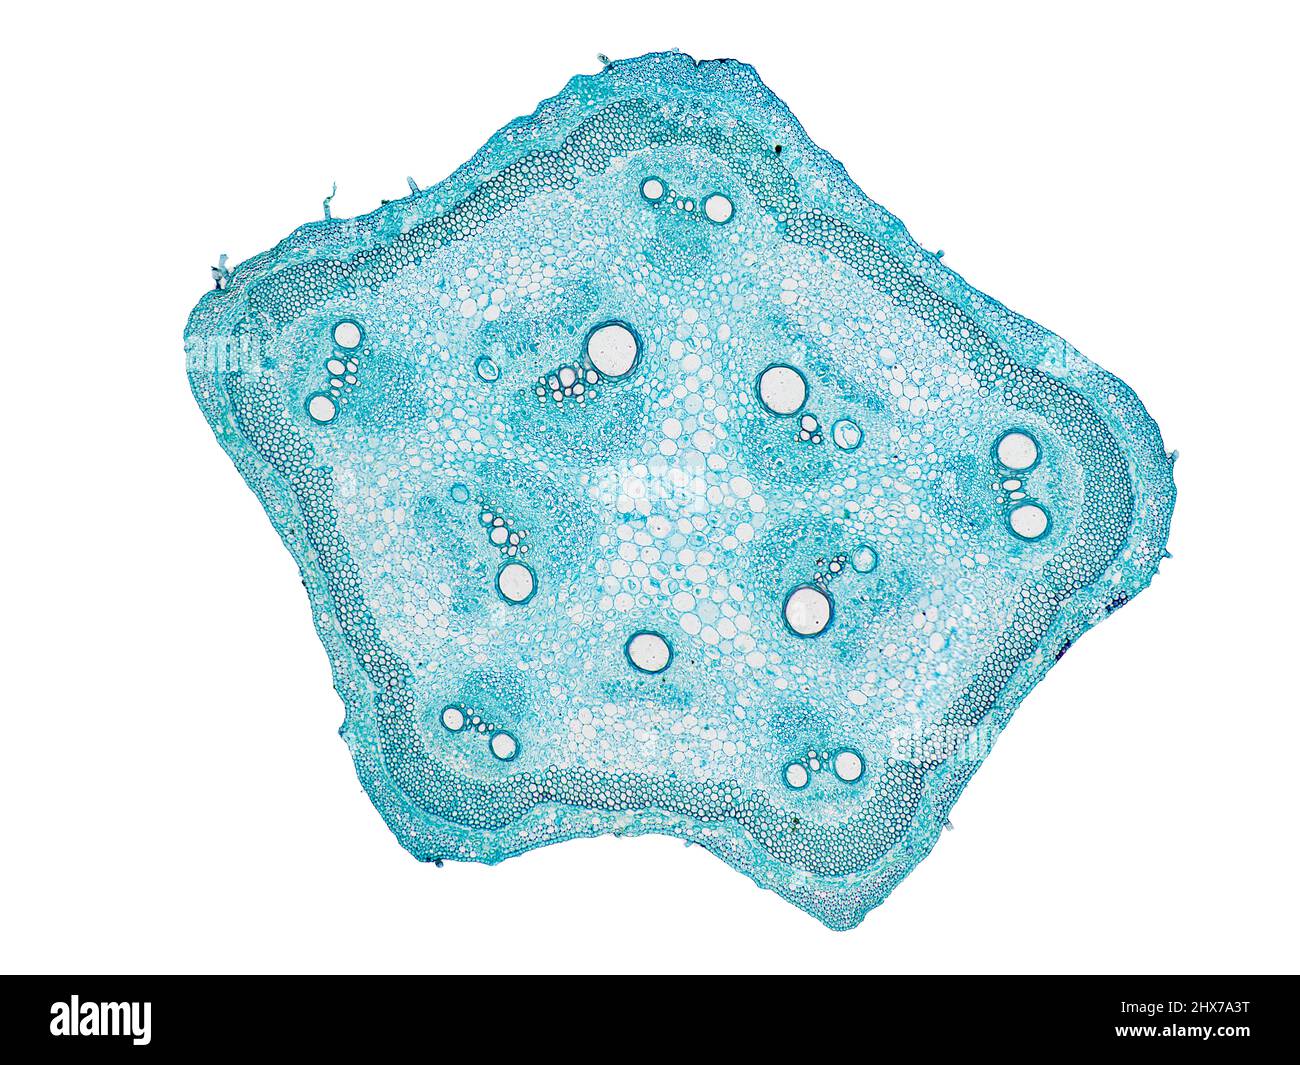 coupe transversale de la tige de la plante sous le microscope – vue microscopique des cellules de la plante pour l'éducation botanique – haute qualité Banque D'Images